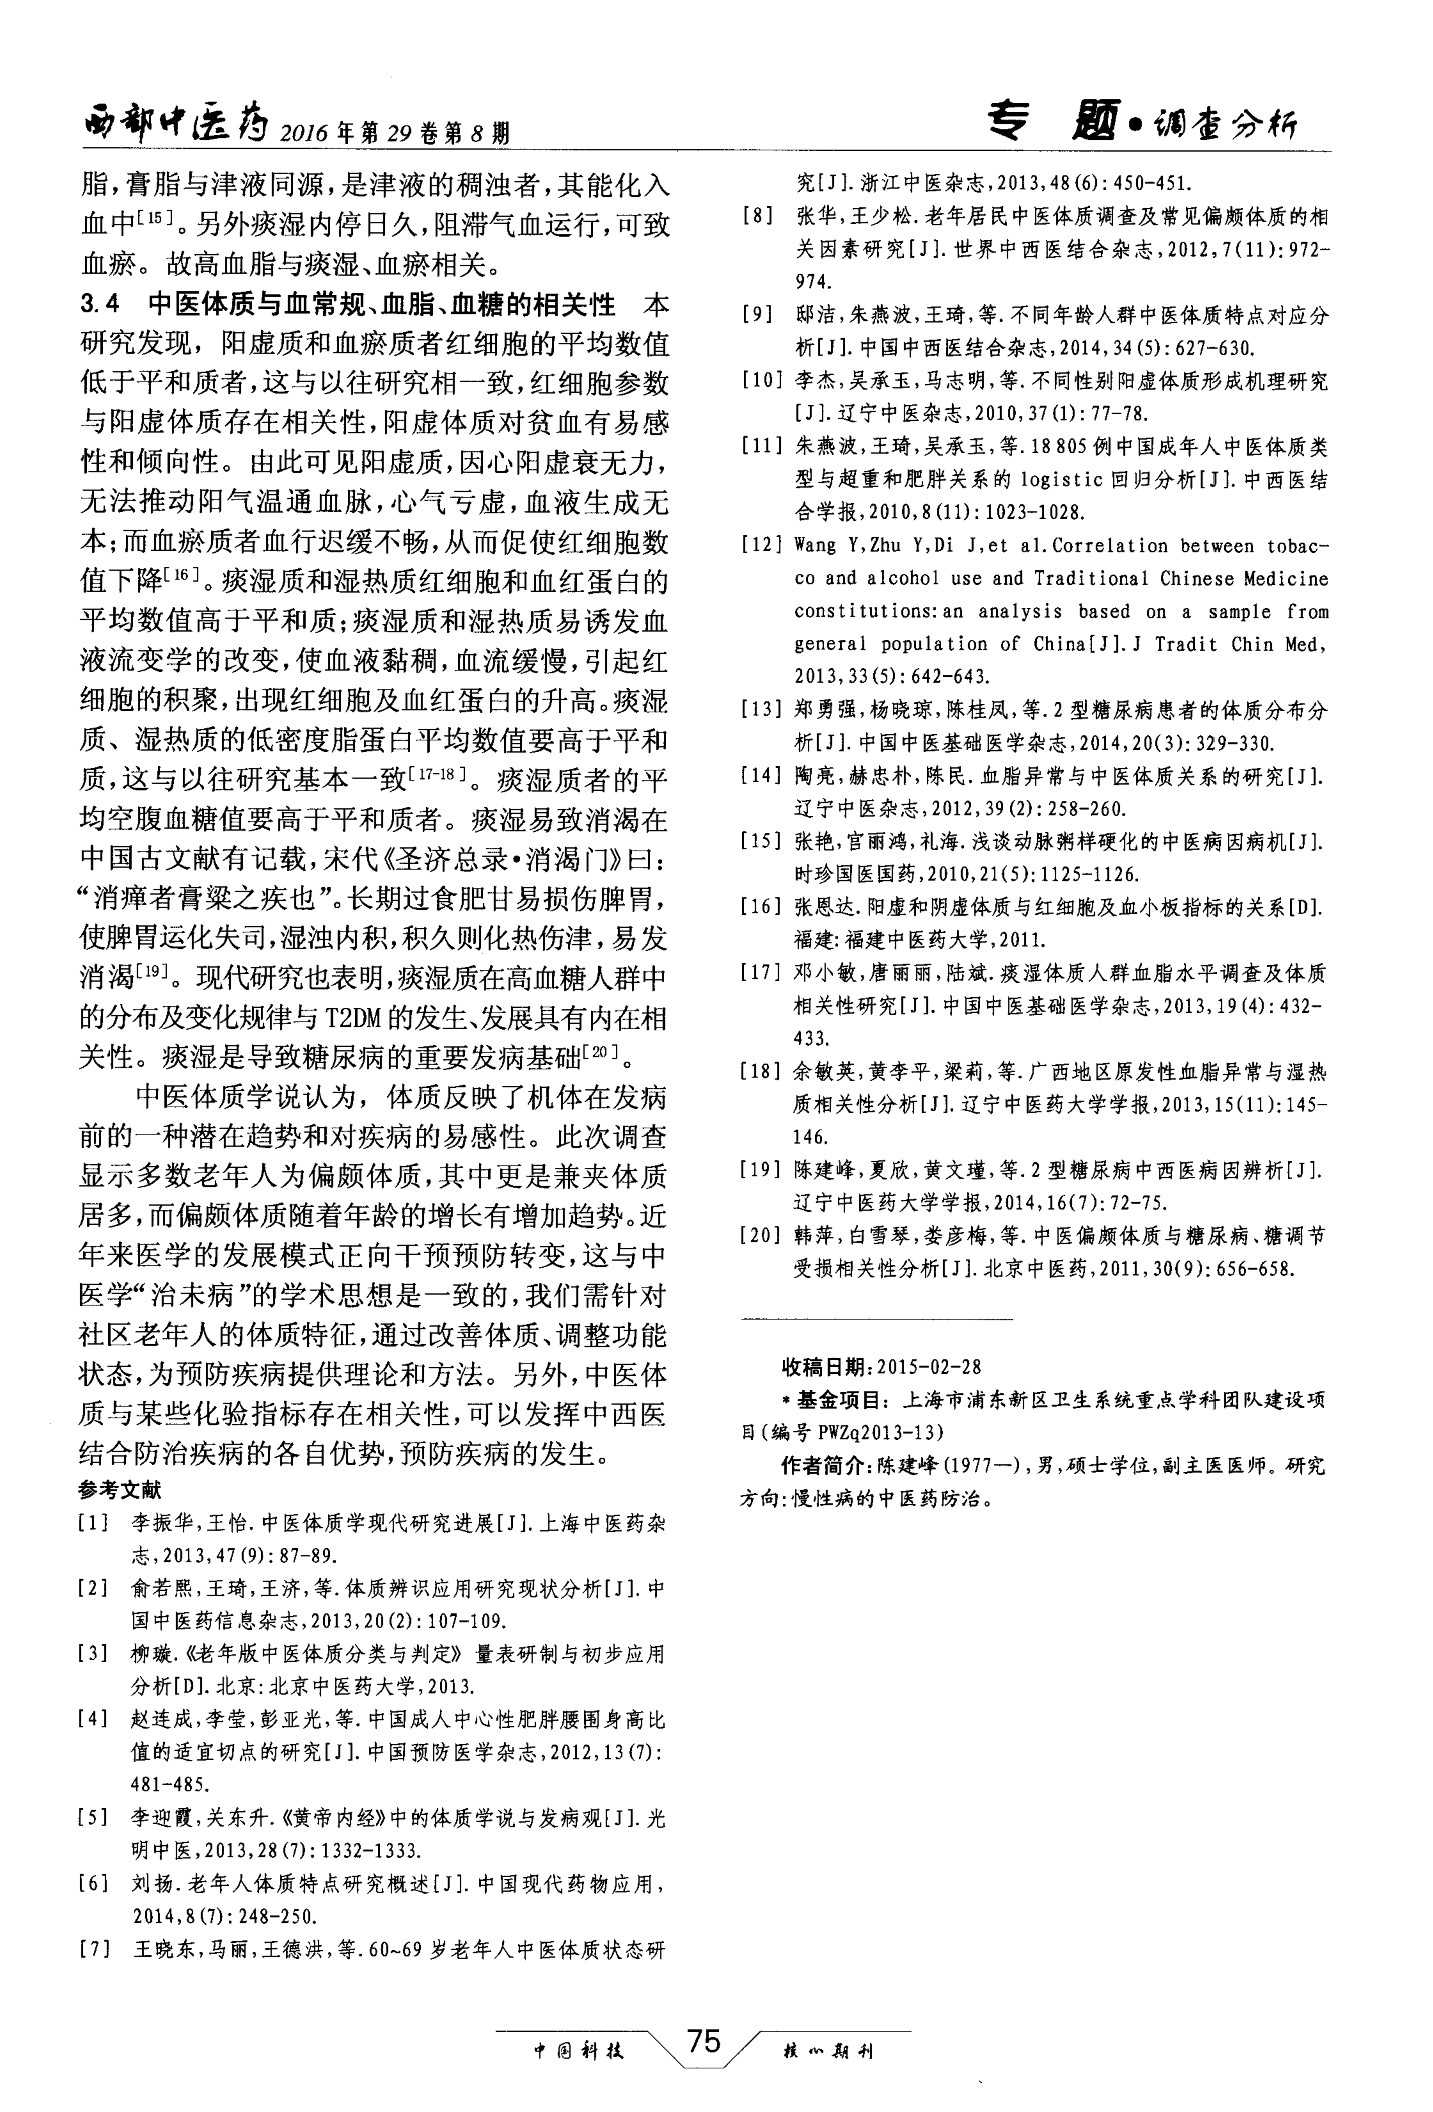 上海市某社区65岁以上老年人中医体质调查分析5.jpg